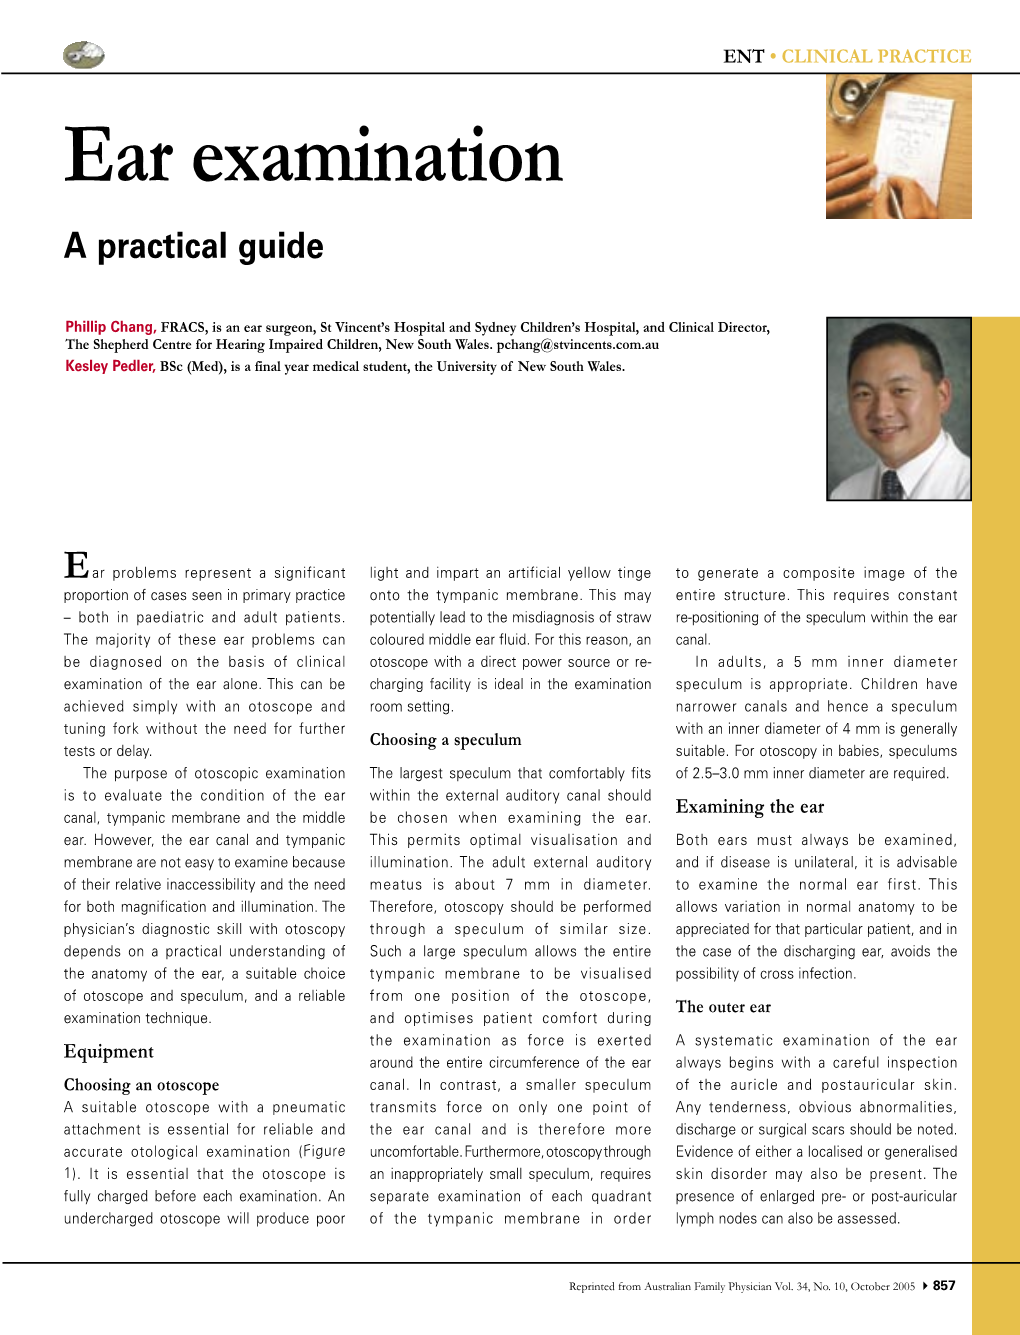 Ear Examination a Practical Guide